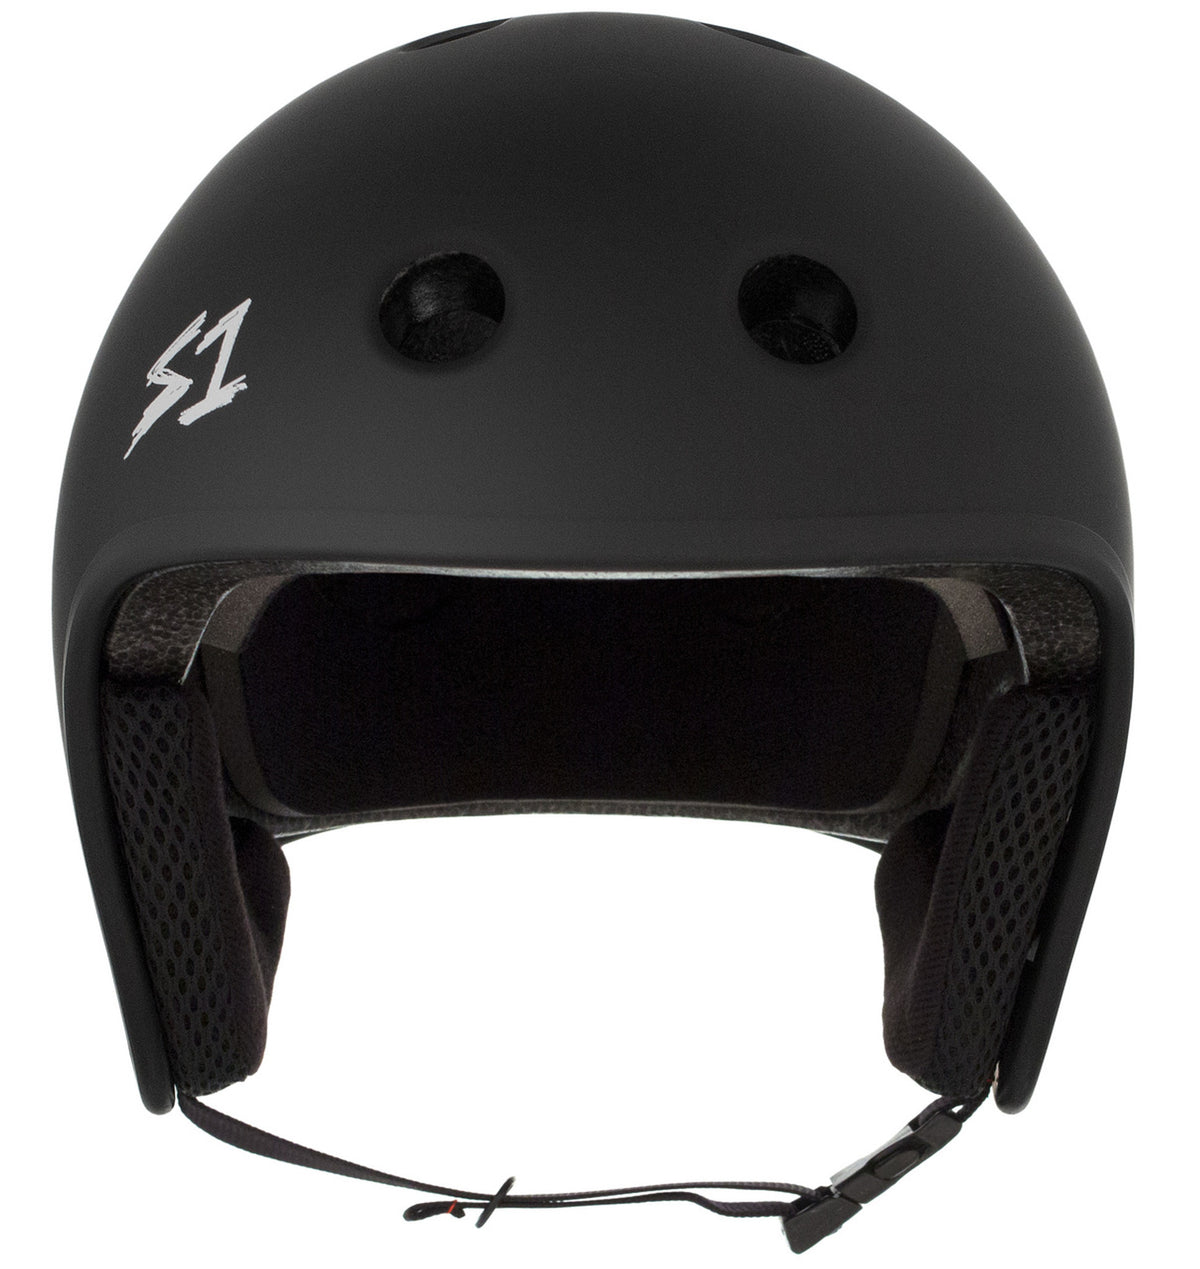 S1 Retro Lifer Helmet - Black Matte